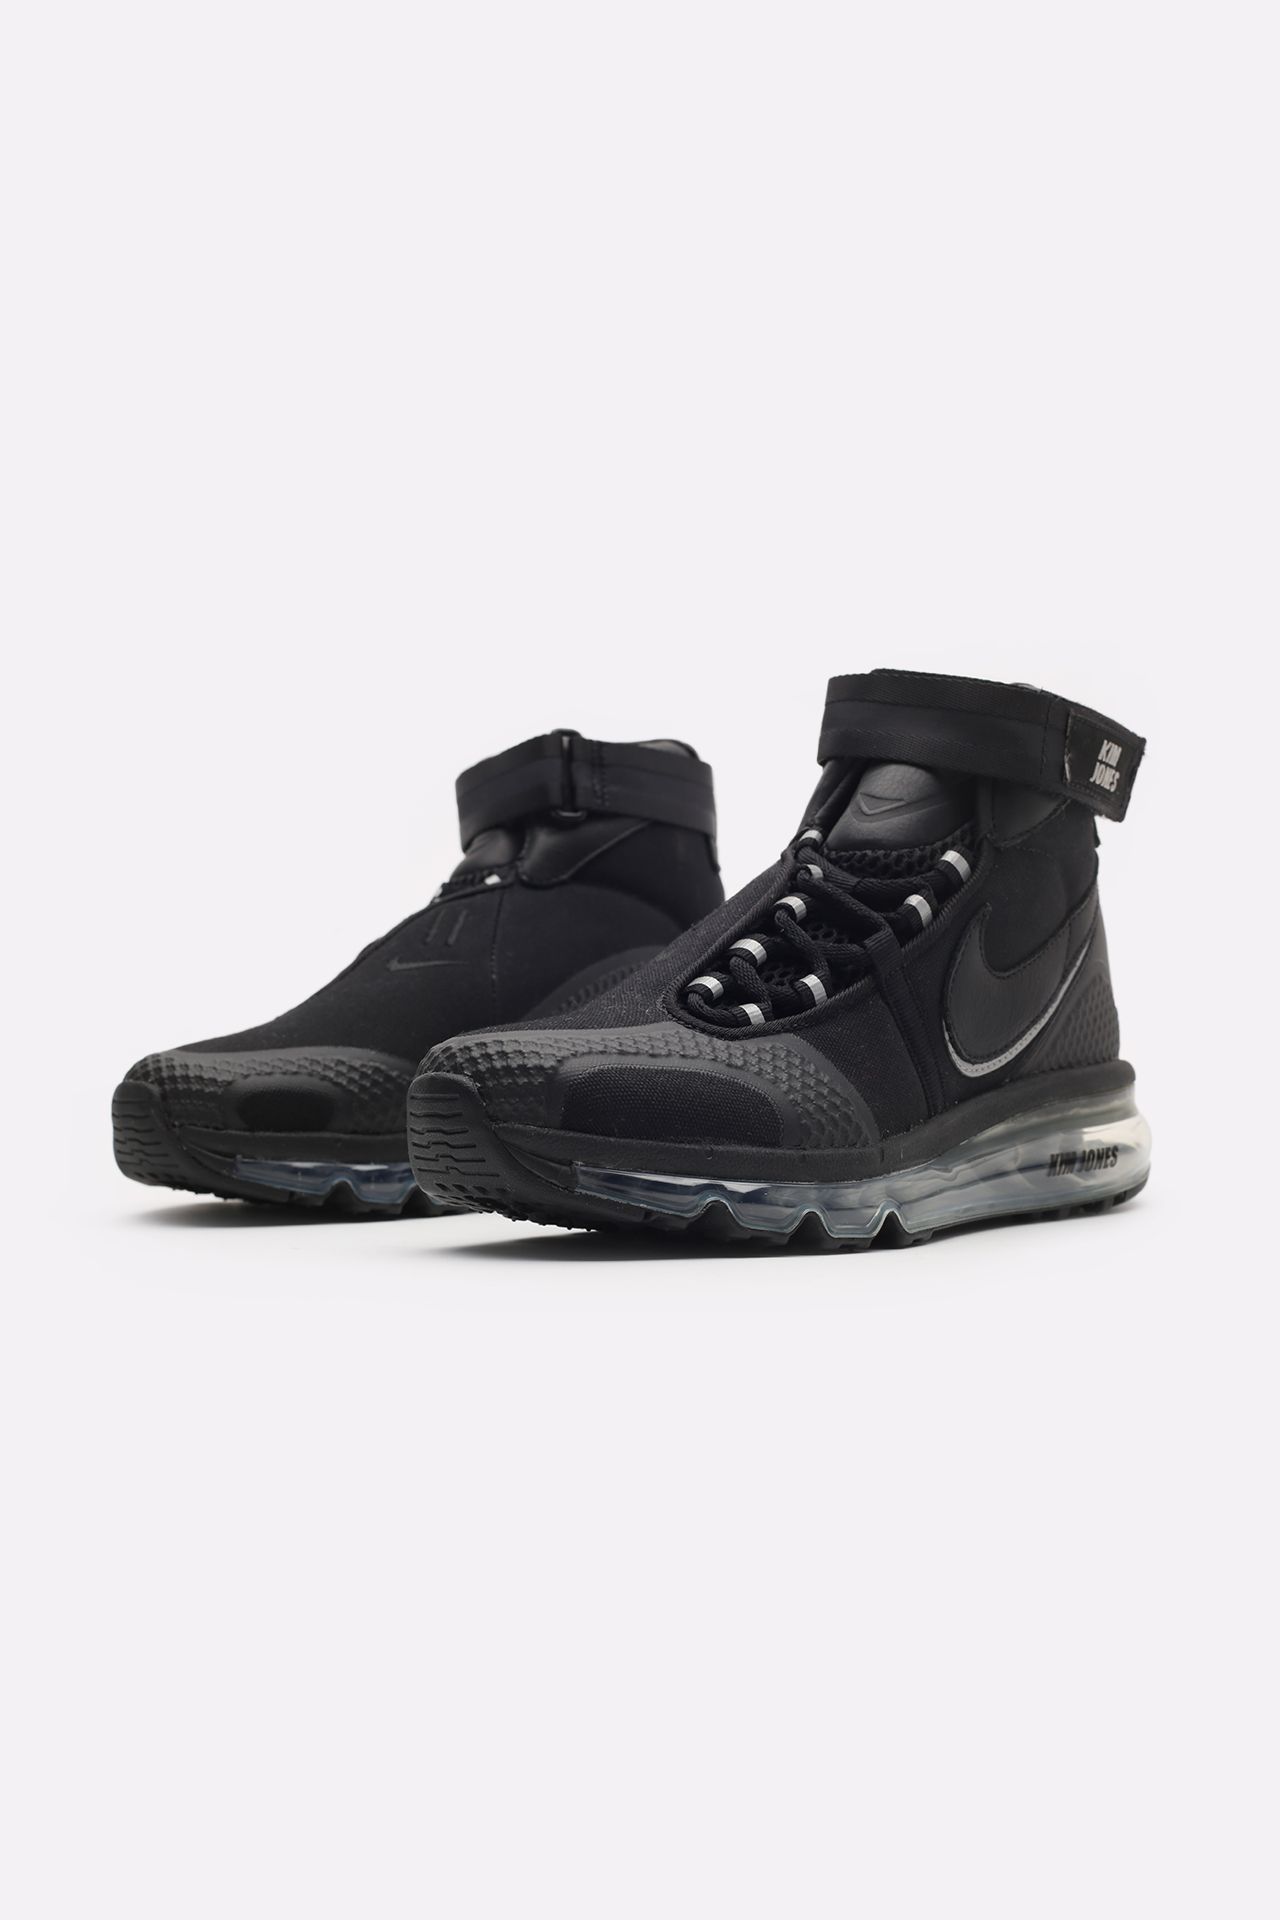 Купить чёрные кроссовки X Kim Jones Air Max 360 Hi от Nike Ao2313 001